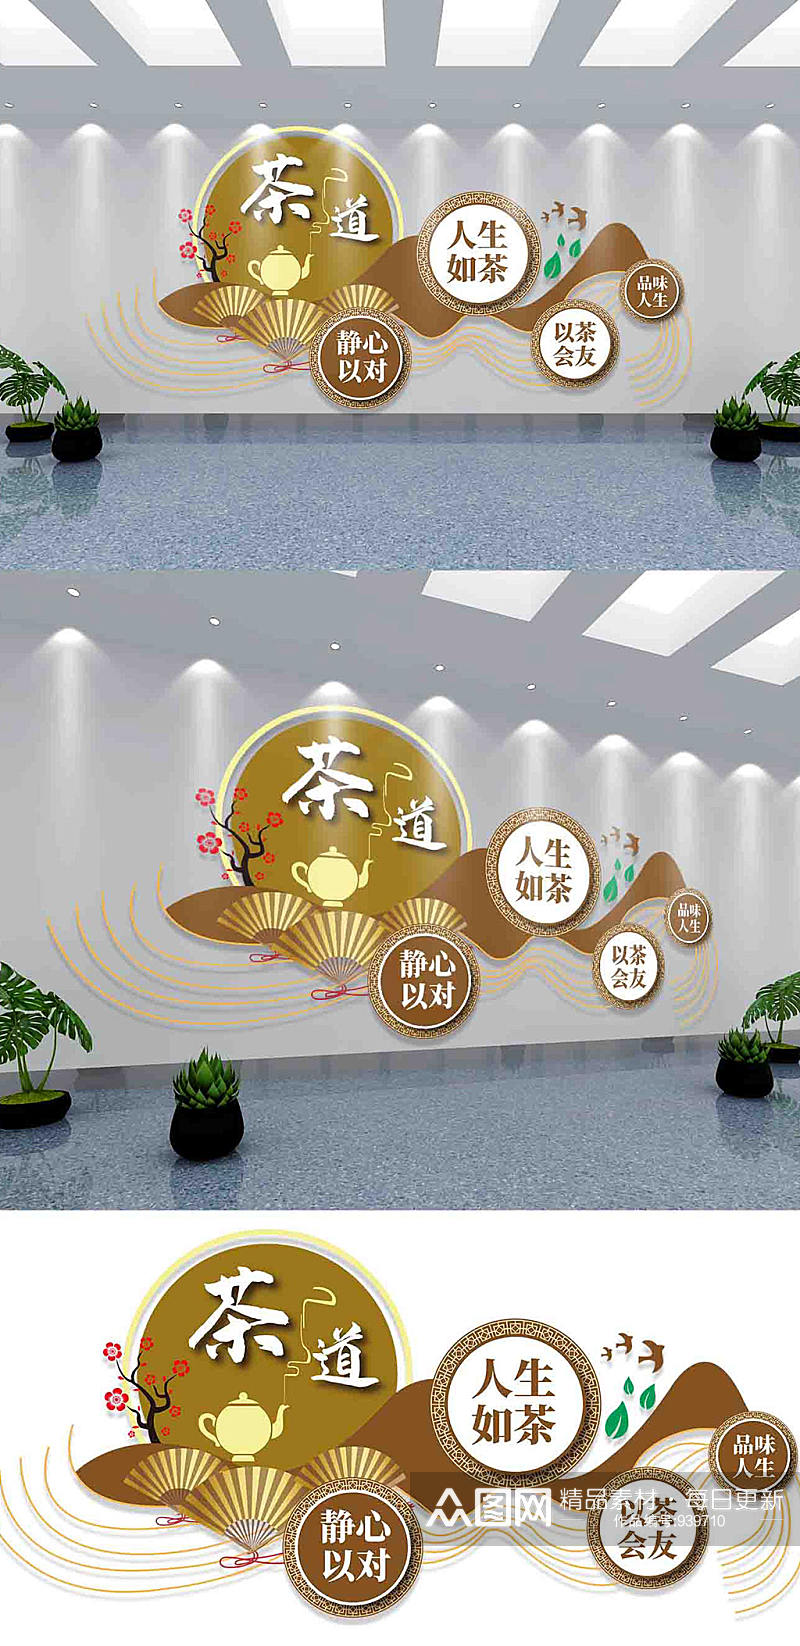 中国风茶馆文化墙宣传设计素材